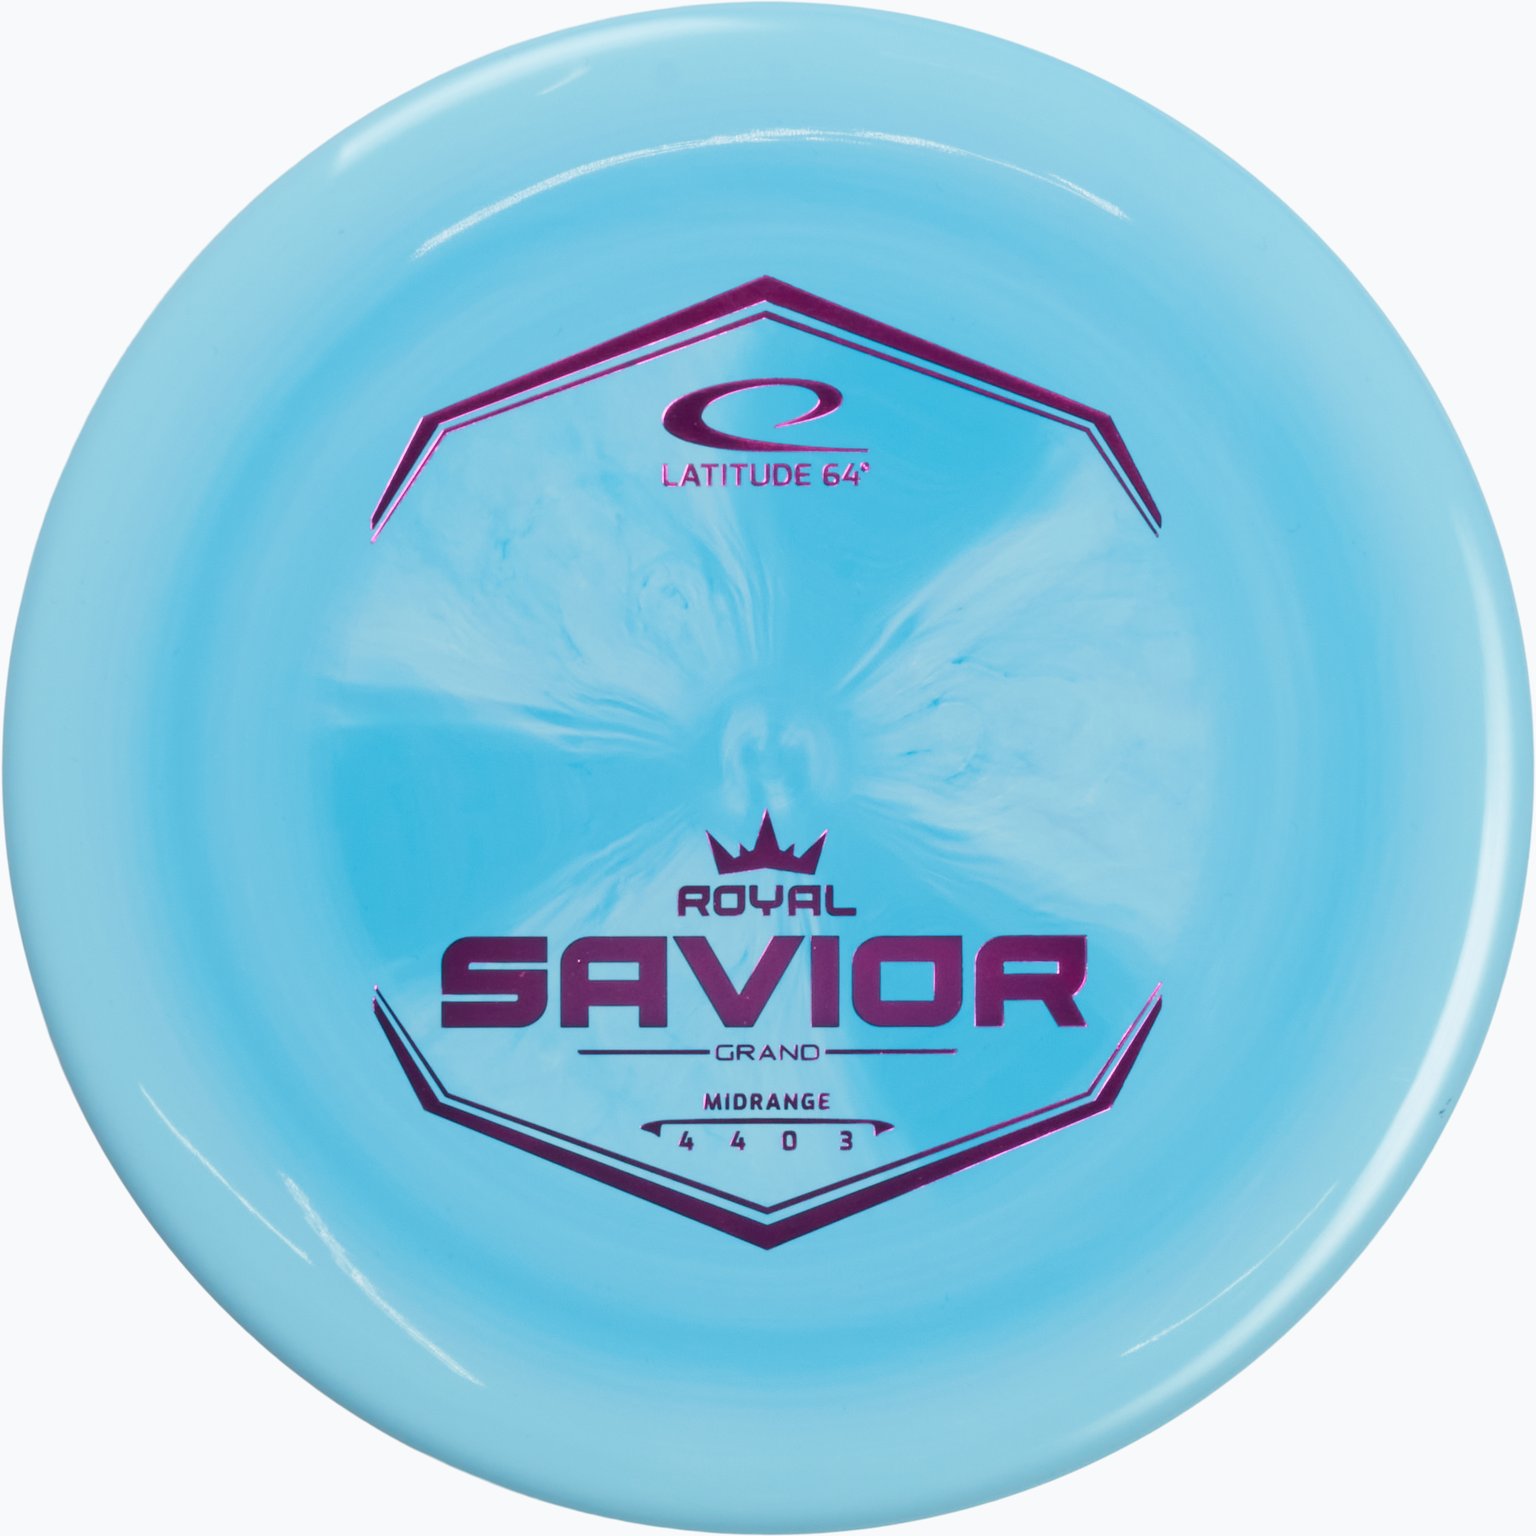 Grand Saviour Midrange disc